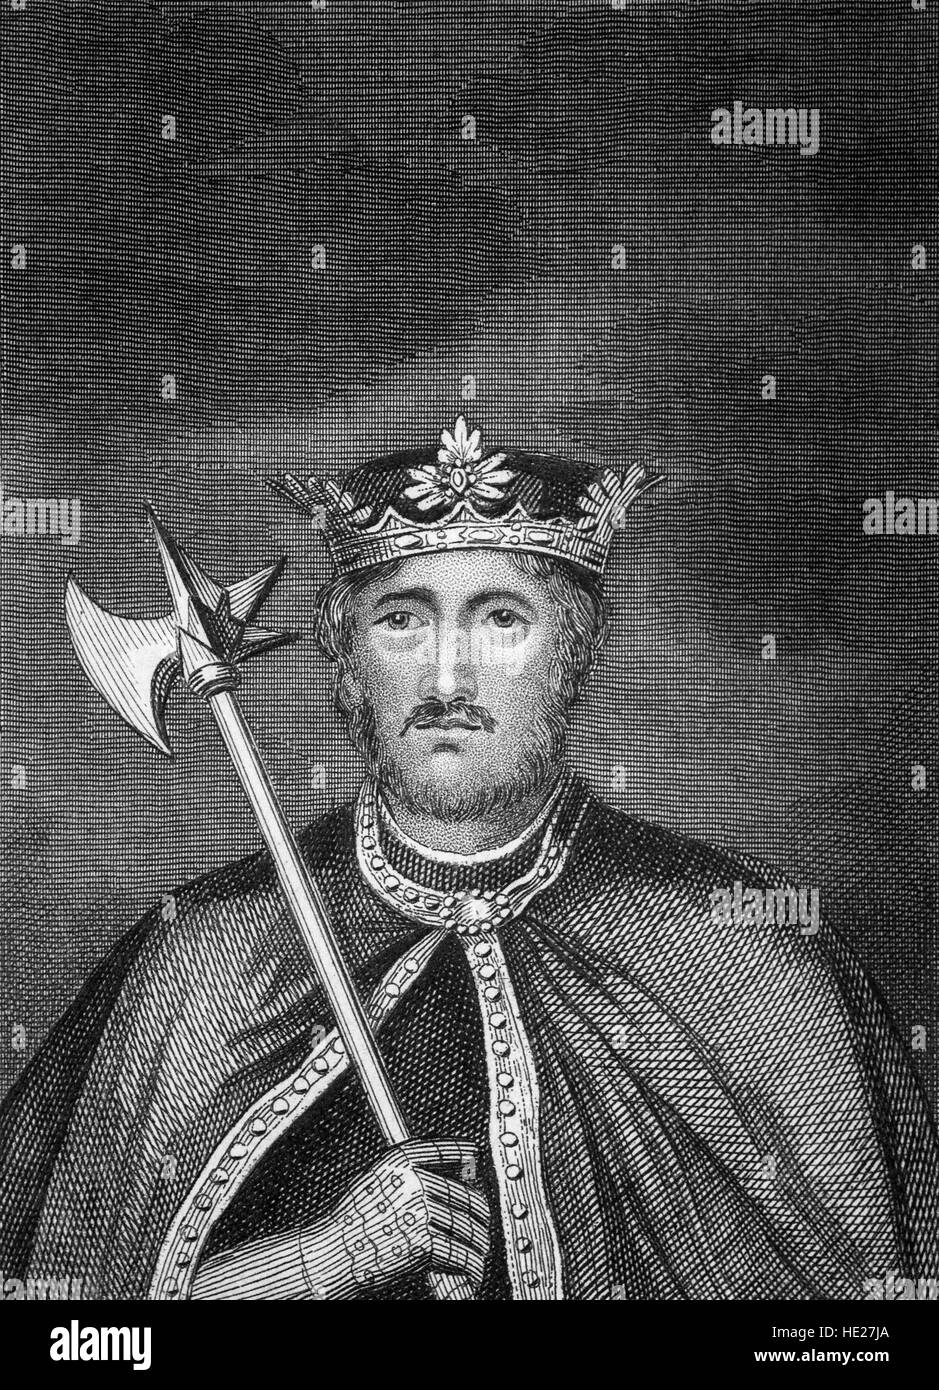 Richard I (1157 - 1199) fue Rey de Inglaterra a partir del 6 de julio de 1189 hasta su muerte. Fue el tercero de los cinco hijos del Rey Enrique II de Inglaterra y la Duquesa Leonor de Aquitania. Él era conocido como Richard Coeur de Lion o Ricardo Corazón de León a causa de su reputación como un gran líder militar y guerrero. Foto de stock